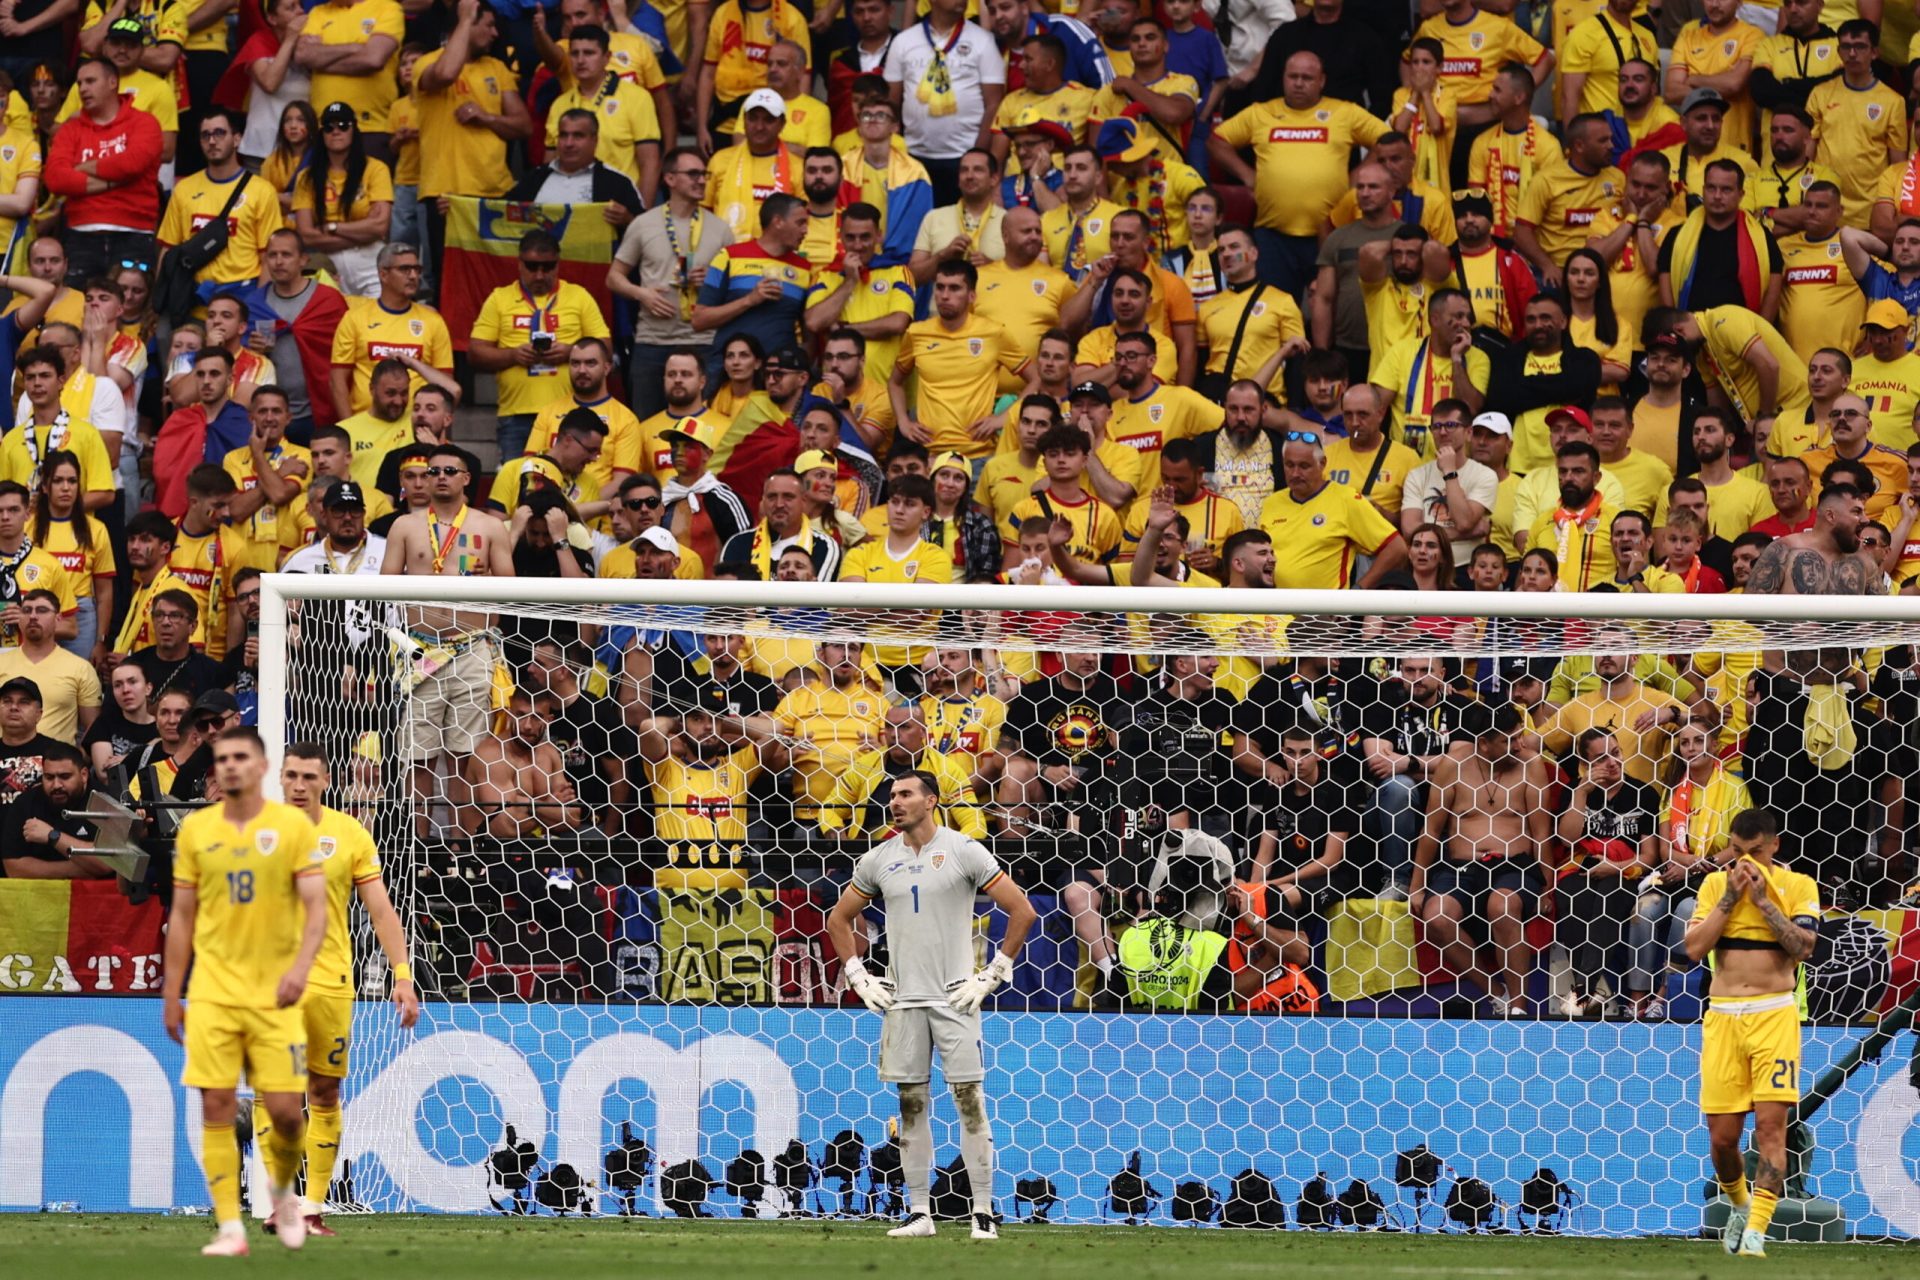 Az "Elképesztő dominancia: Hollandia 3-0-ra legyőzte Romániát a nyolcaddöntőben